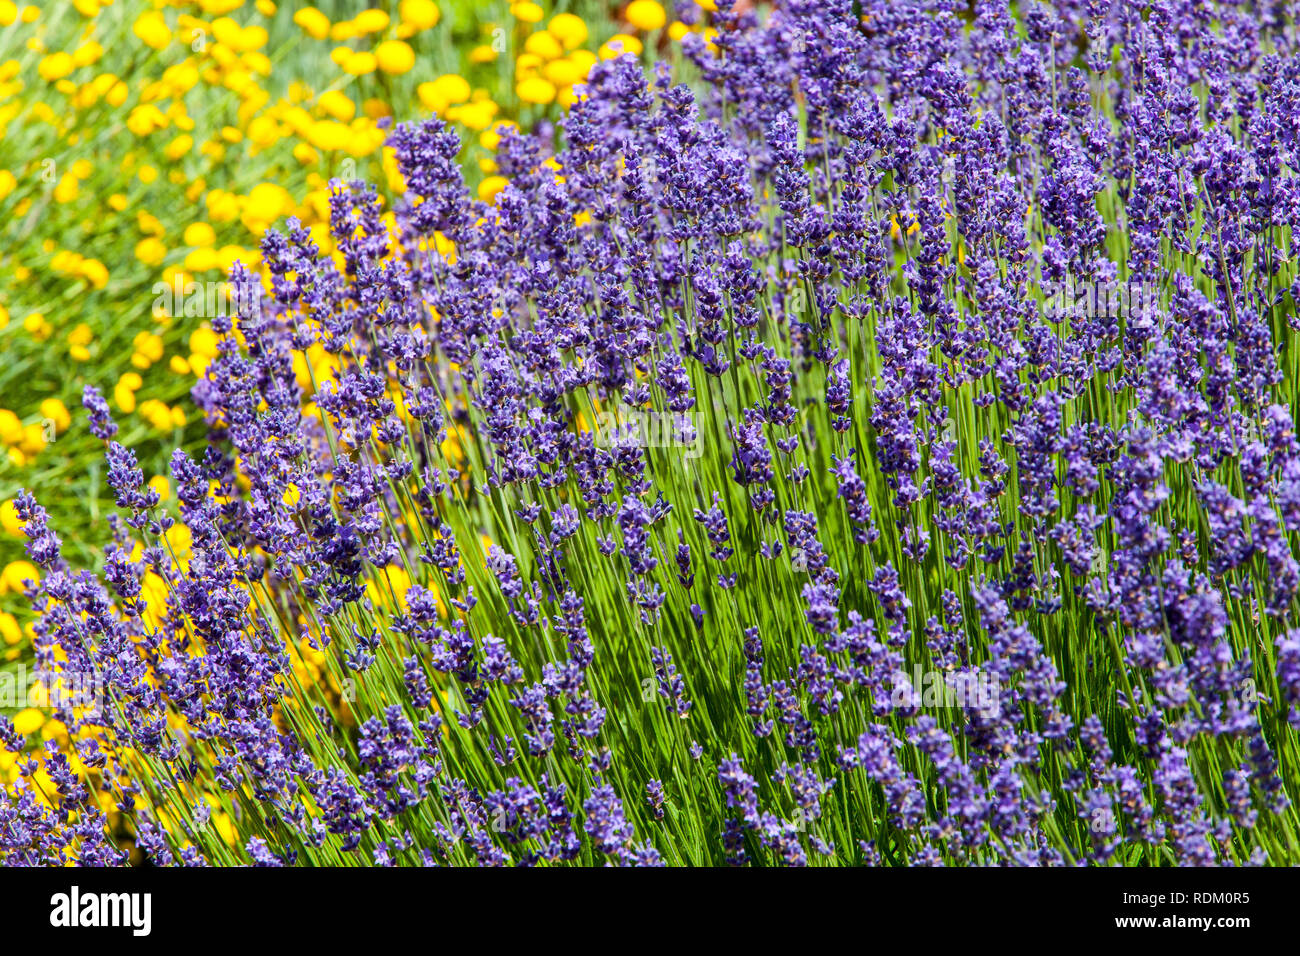 Perennial garden flower border plant Lavender Stock Photo